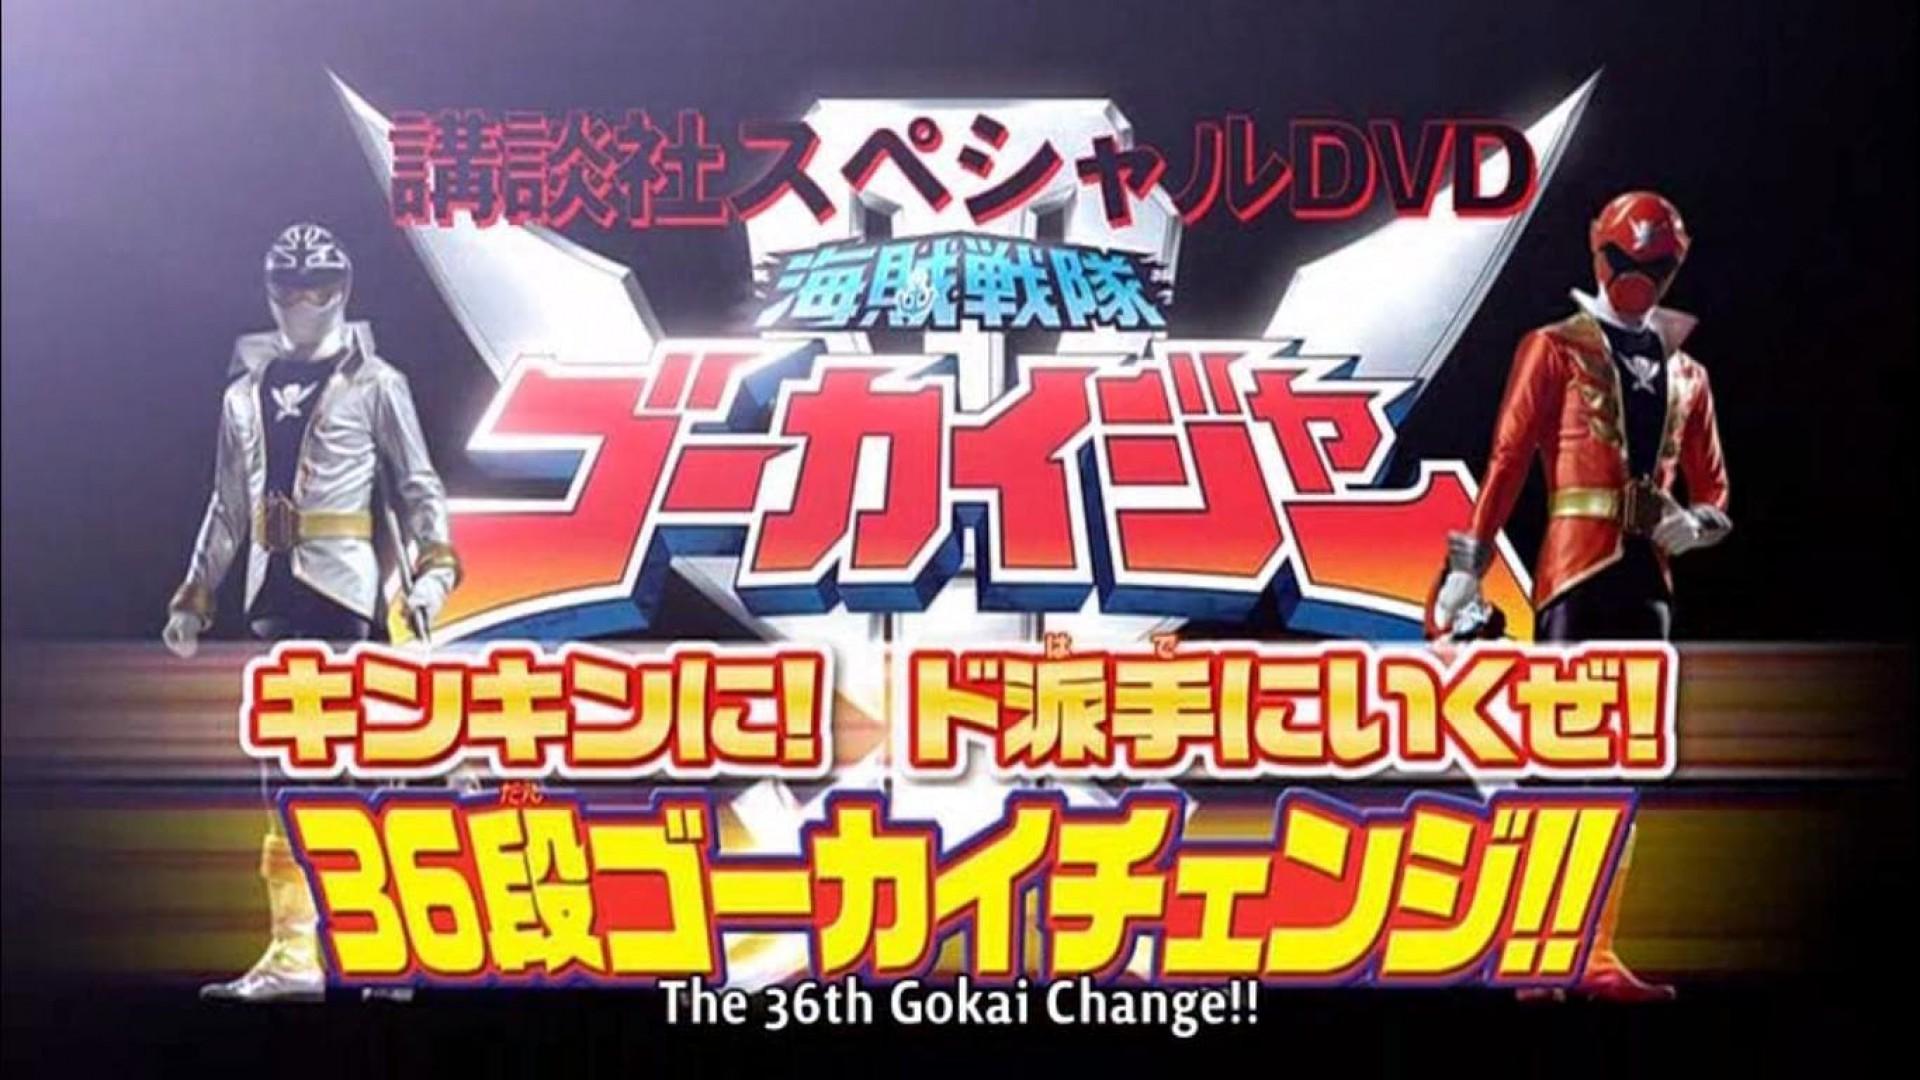 Kaizoku Sentai Gokaiger: Let's Do This Goldenly! Roughly! 36 Round Gokai Change!!